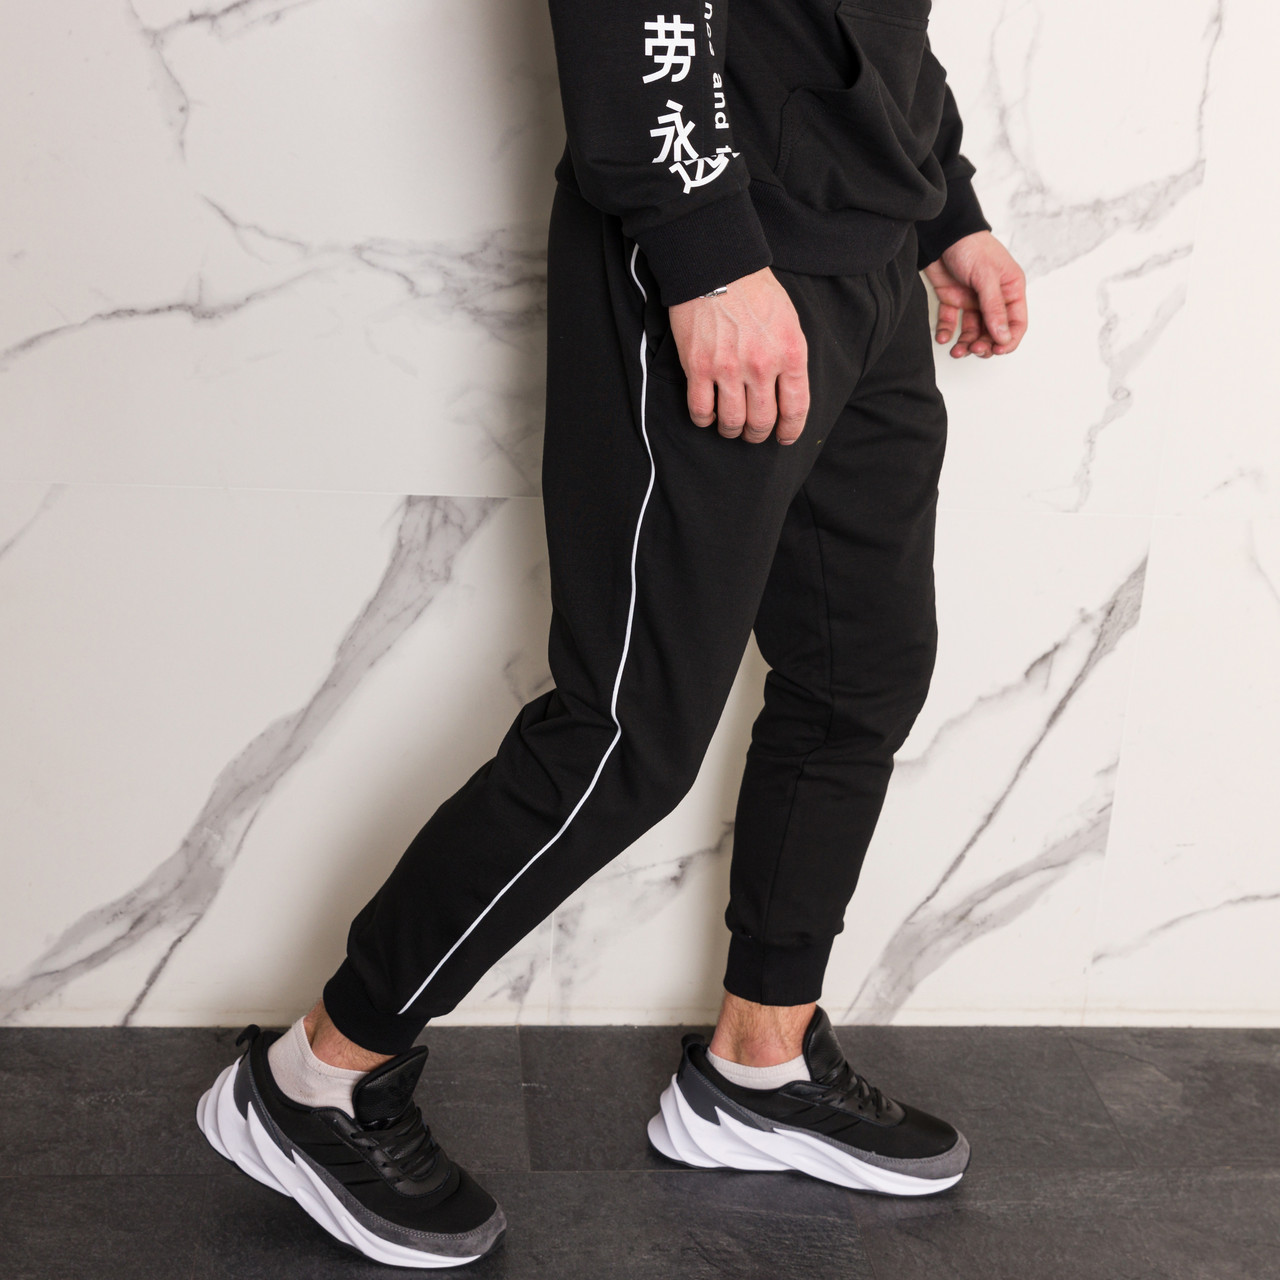 Спортивные штаны мужские черные с тонким белым лампасом от бренда ТУР модель Рейн (Rain) TURWEAR